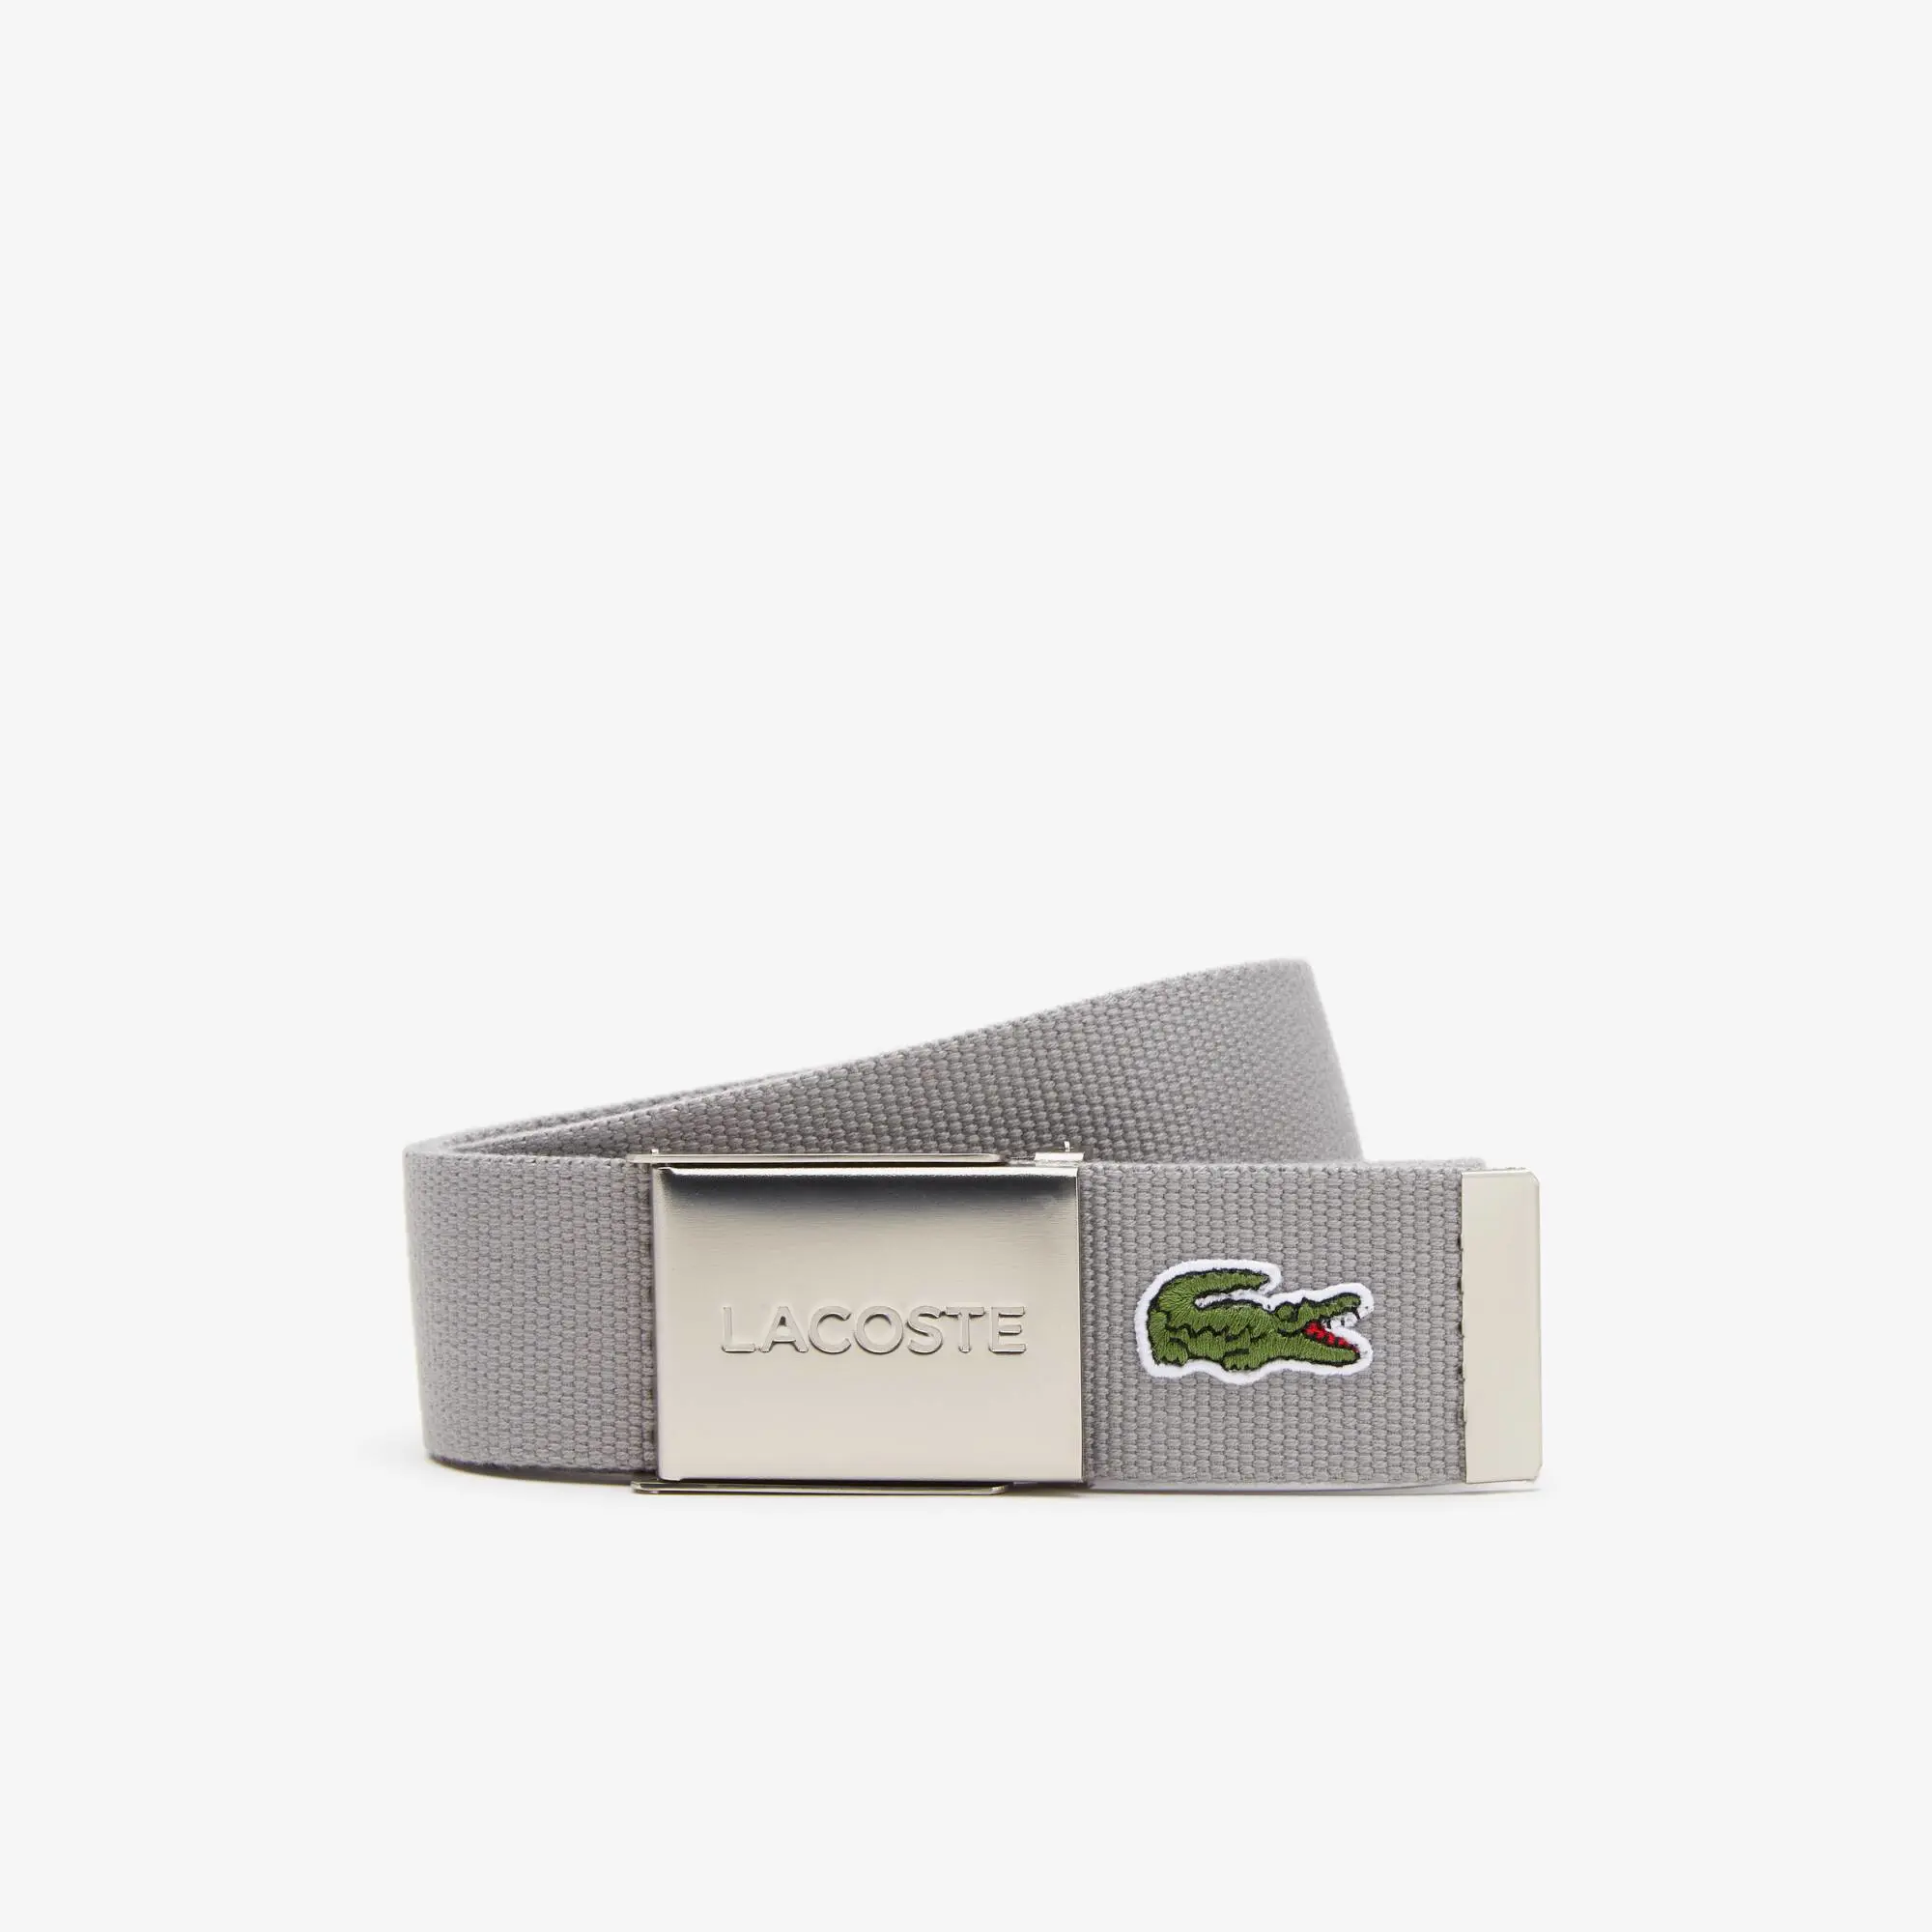 Lacoste Cintura in tessuto intrecciato con fibbia e incisione Lacoste Made in France da uomo. 1